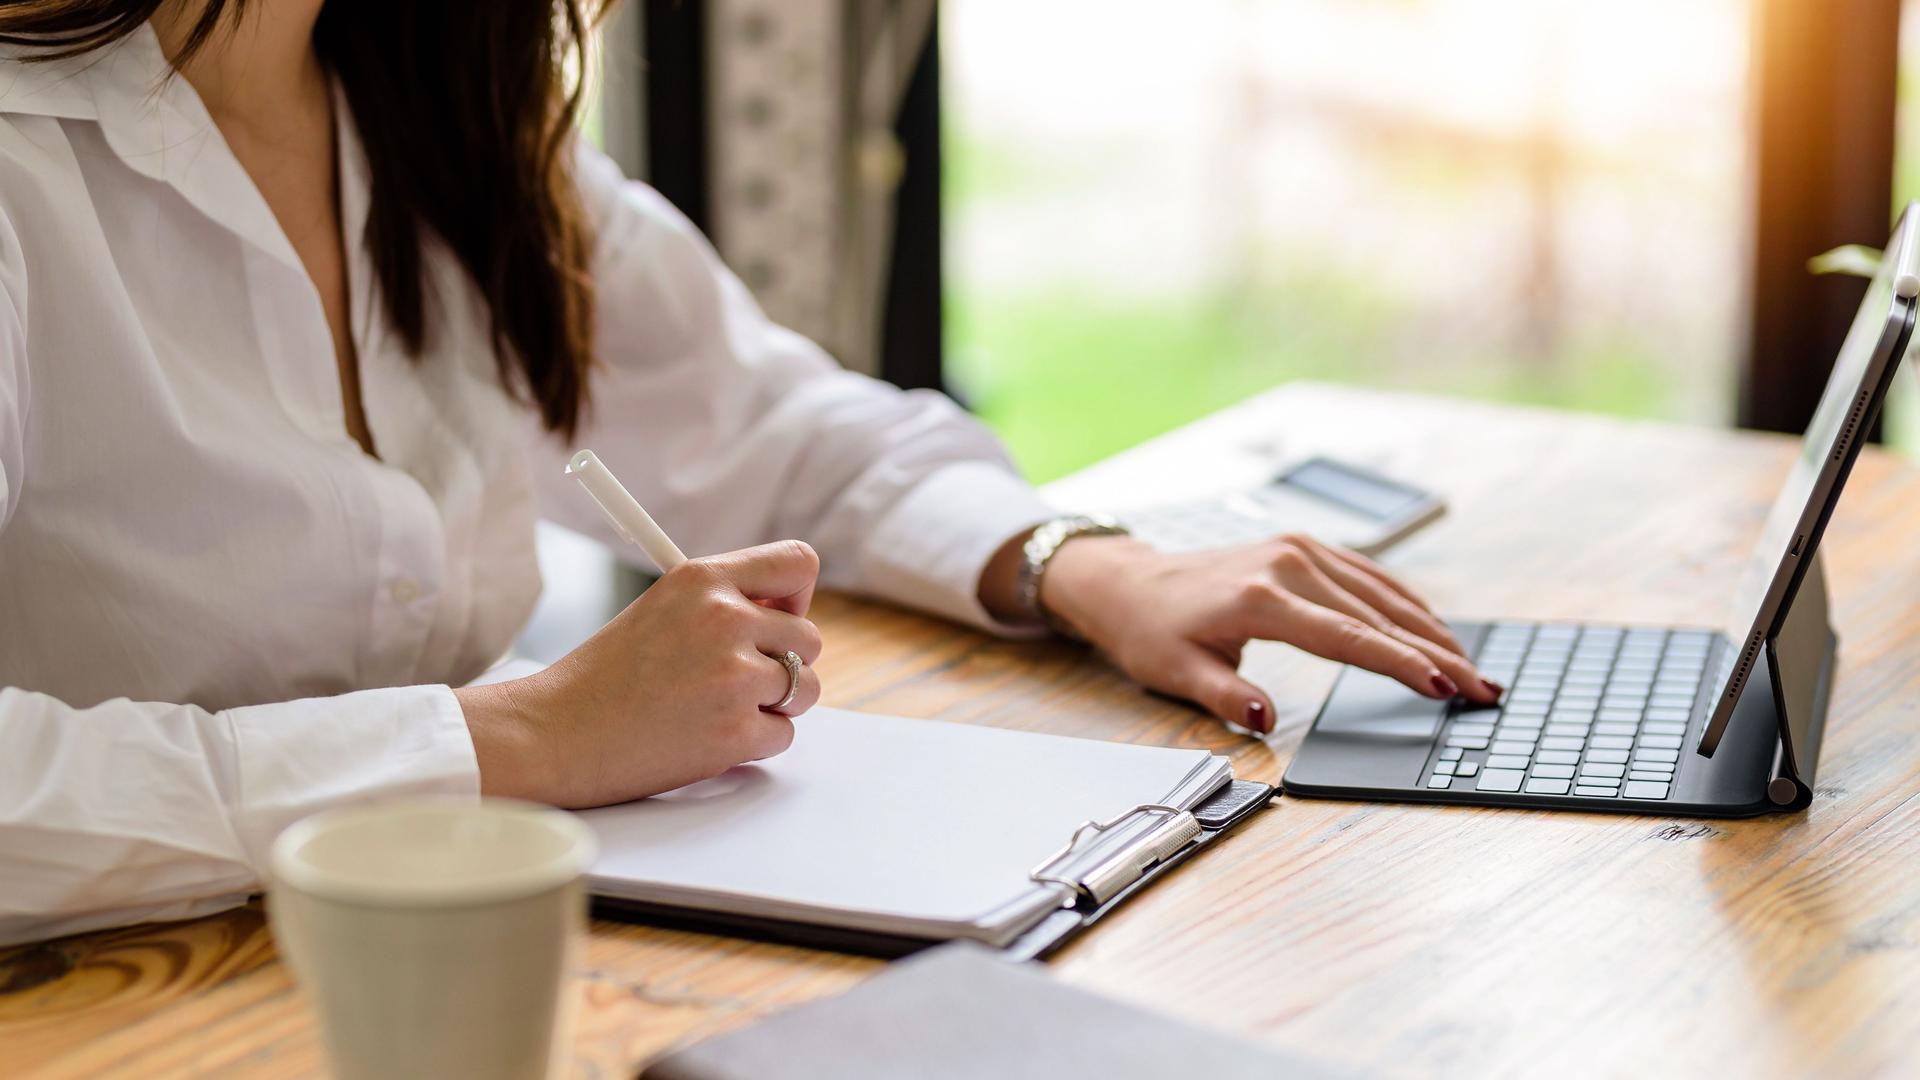 Nahaufnahmebild einer Frau, die auf Notizbuch und Laptop im Büro schreibt bzw. notiert.